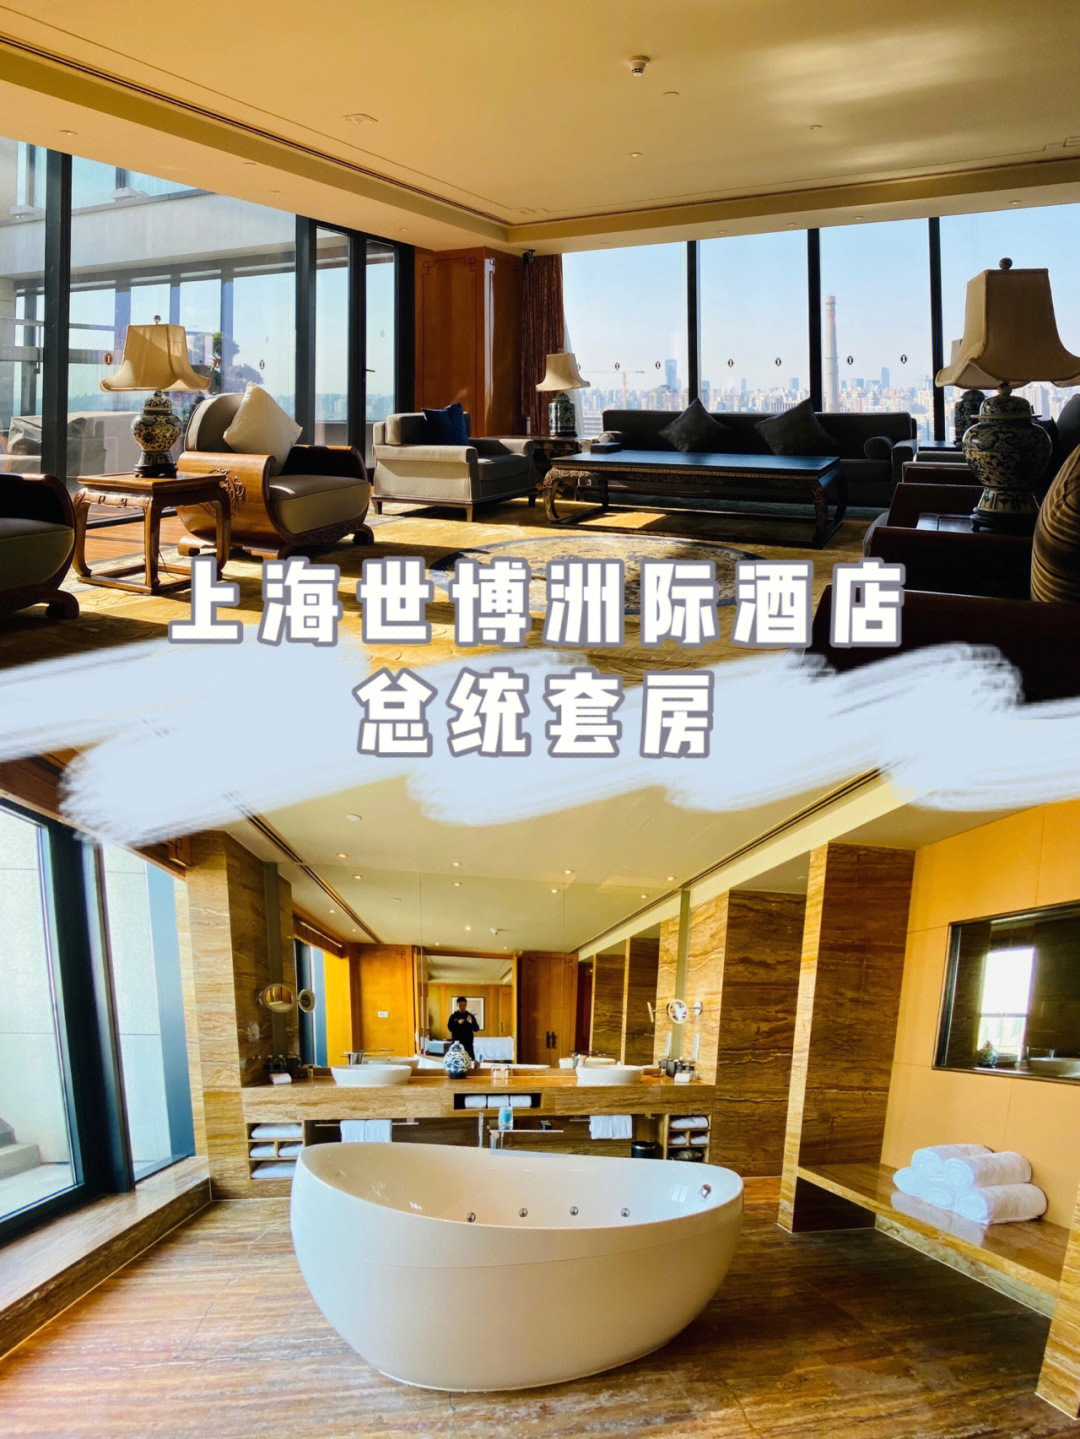 上海世博洲际酒店总统套房大揭秘60